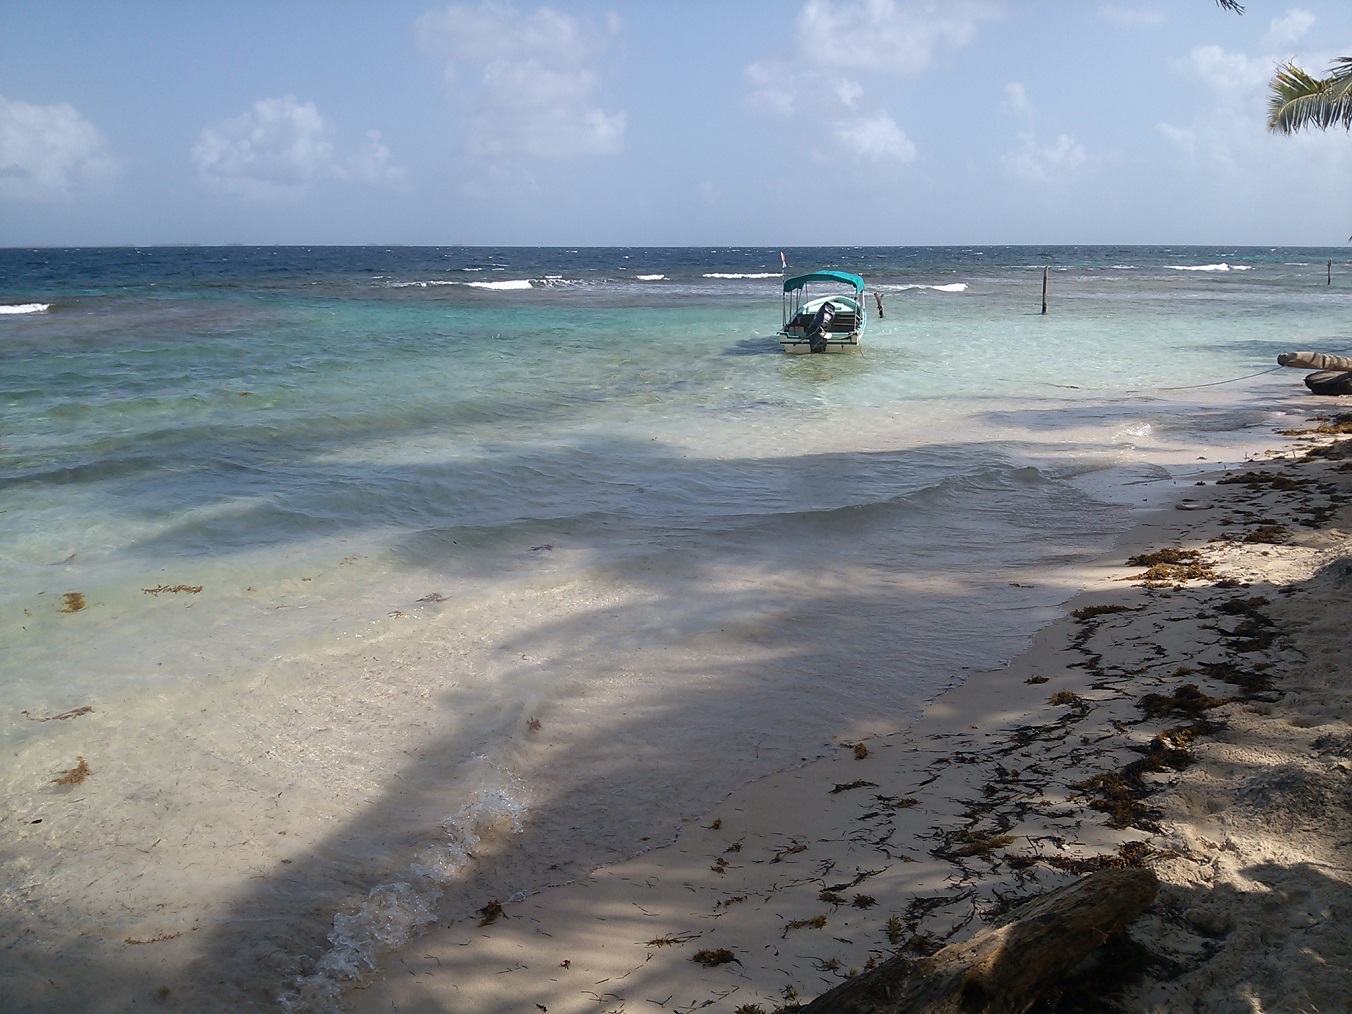 Fotografija Iguana island beach priljubljeno mesto med poznavalci sprostitve